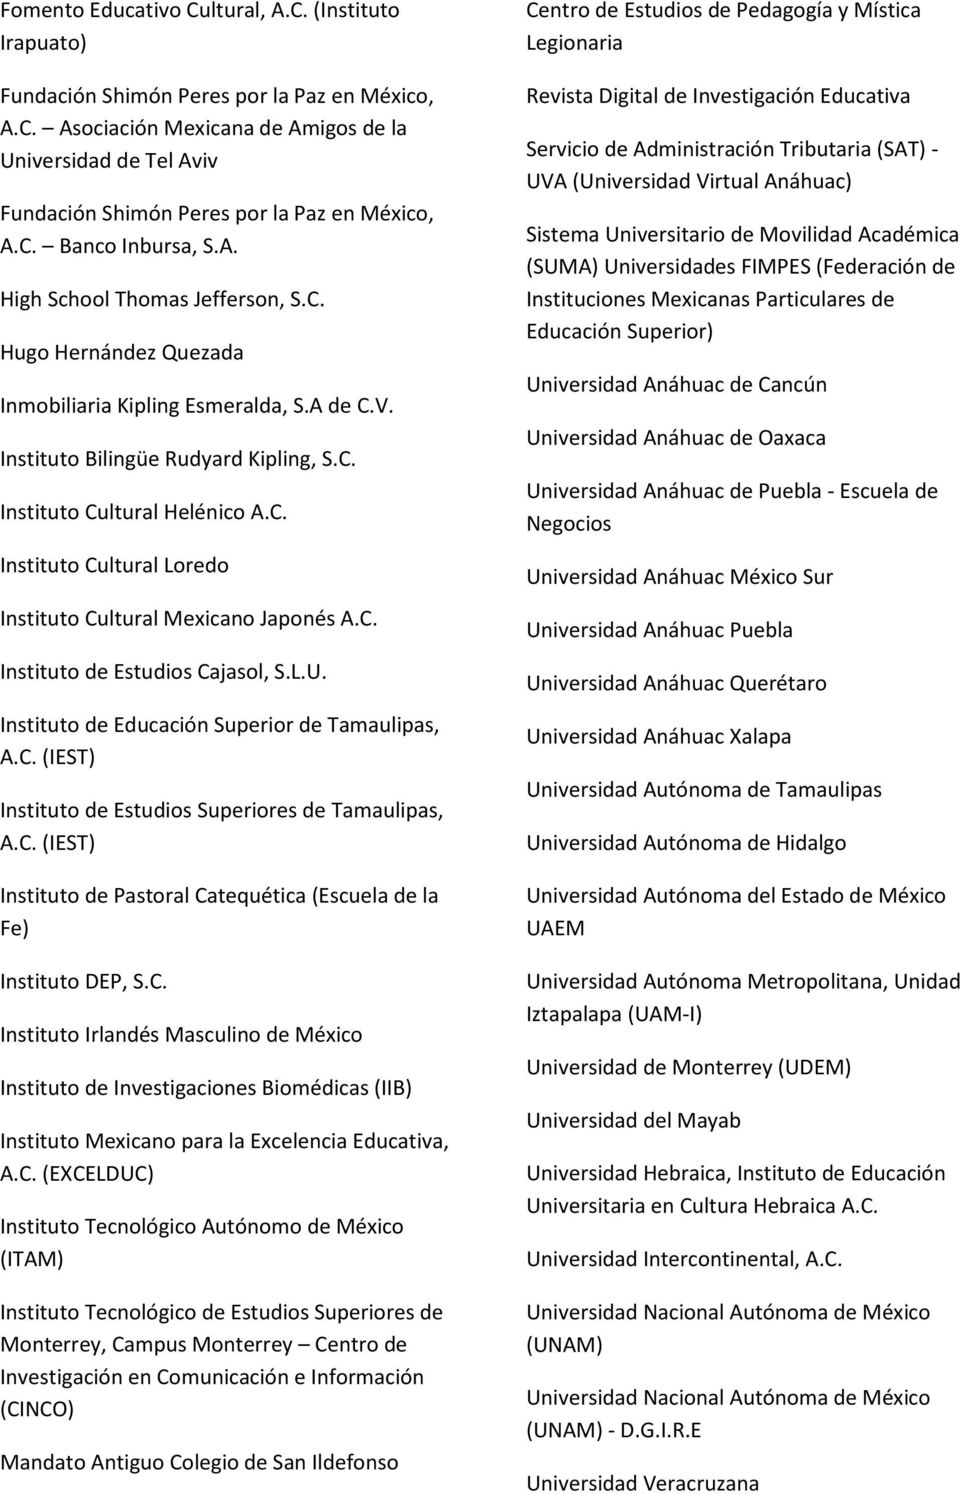 C. Instituto de Estudios Cajasol, S.L.U. Instituto de Educación Superior de Tamaulipas, A.C. (IEST) Instituto de Estudios Superiores de Tamaulipas, A.C. (IEST) Instituto de Pastoral Catequética (Escuela de la Fe) Instituto DEP, S.